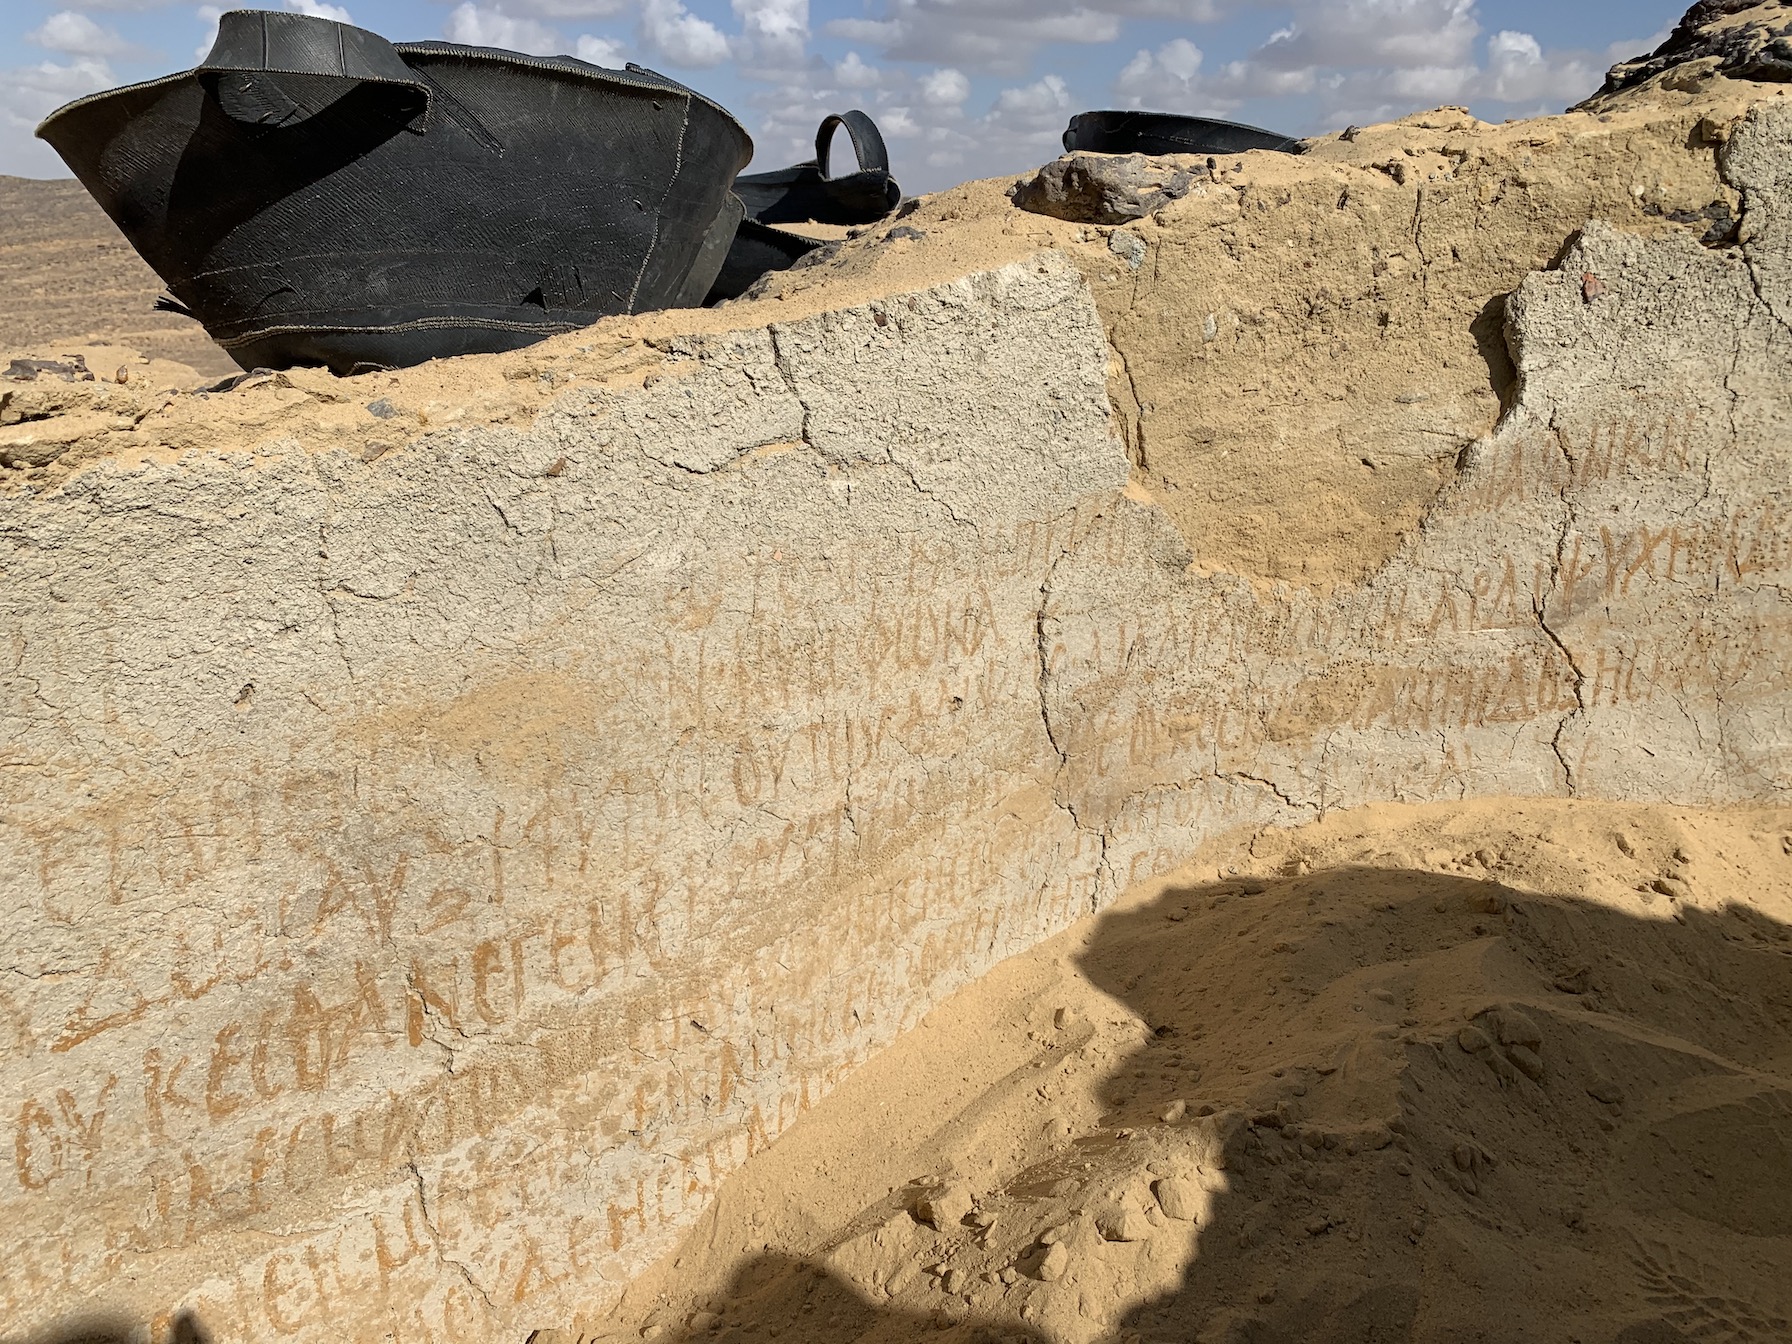 MF-professor Victor Ghica har ledet utgravningsarbeidet i Bahariya-oasen i den vestlige ørkenen i Egypt, der det som trolig er verdens eldste kloster, nå er gravd fram. Ghica sier funnene endrer vår forståelse av den tidlige kristendom.